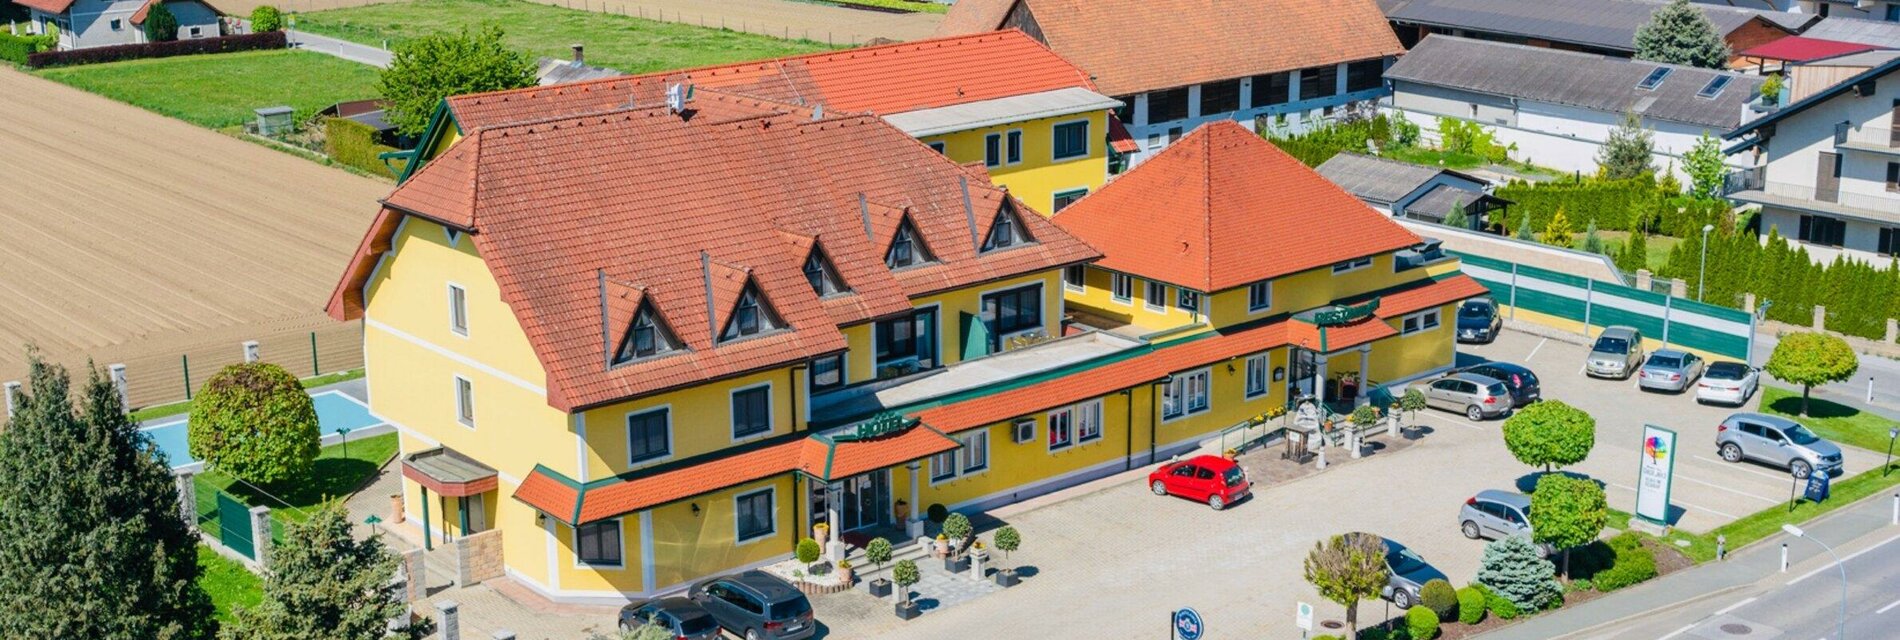 Hotel Schachenwald